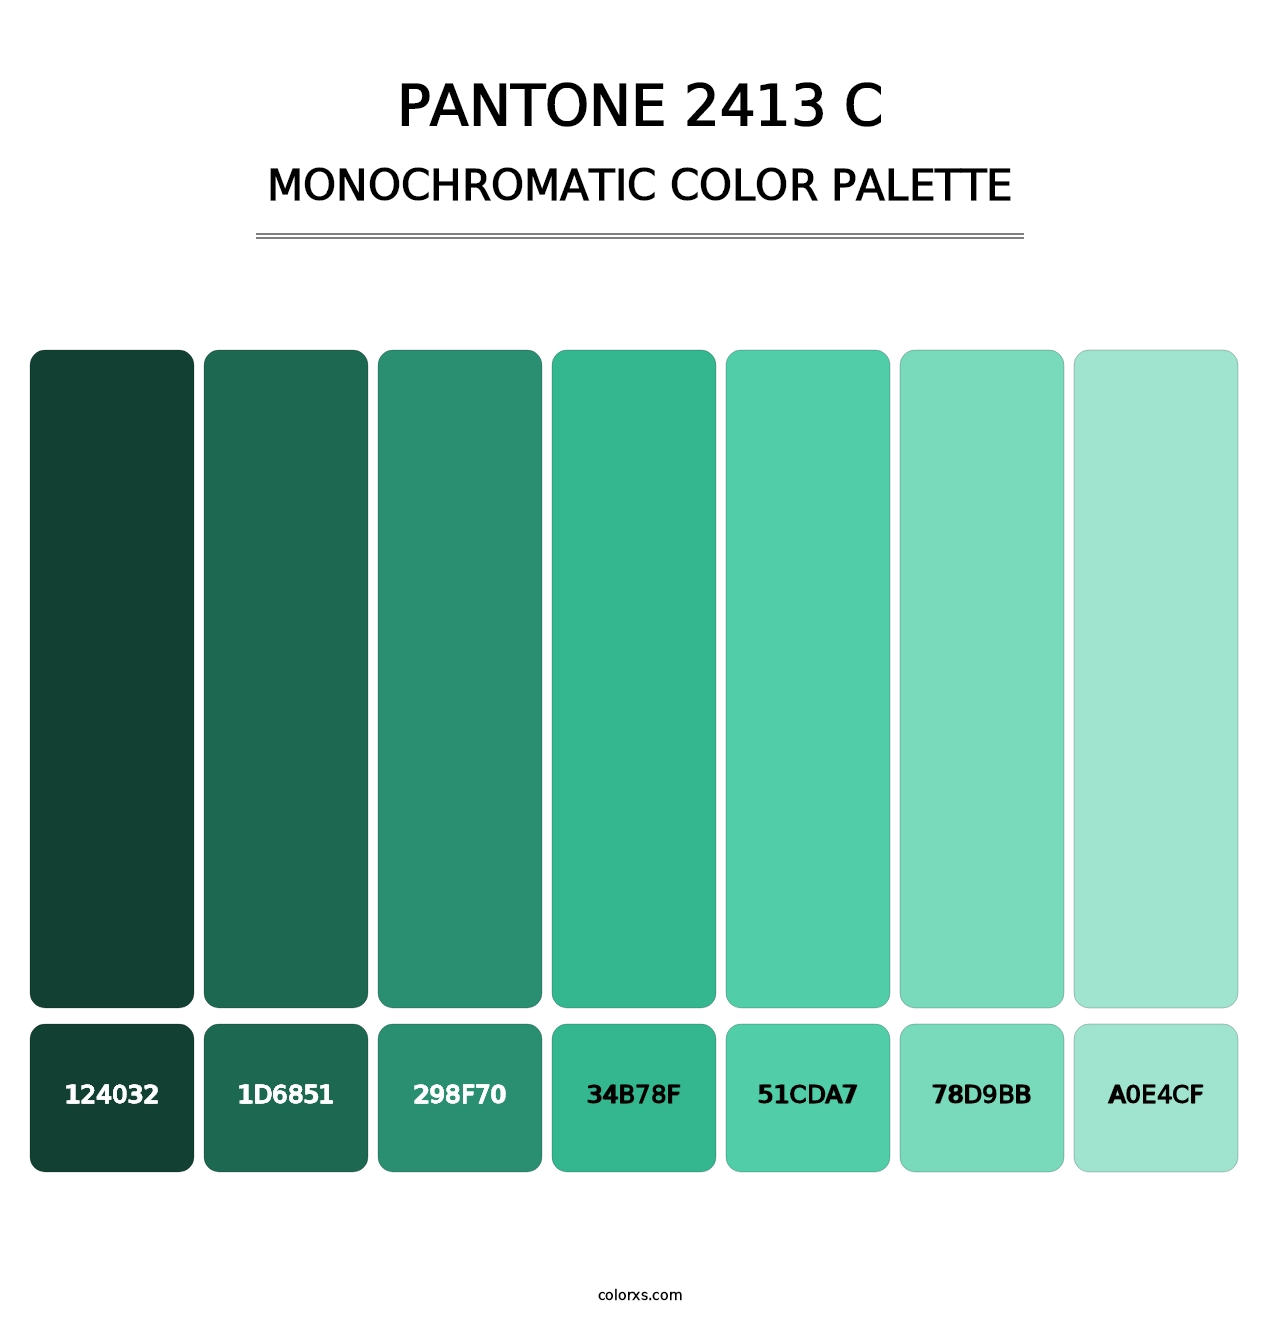 PANTONE 2413 C - Monochromatic Color Palette